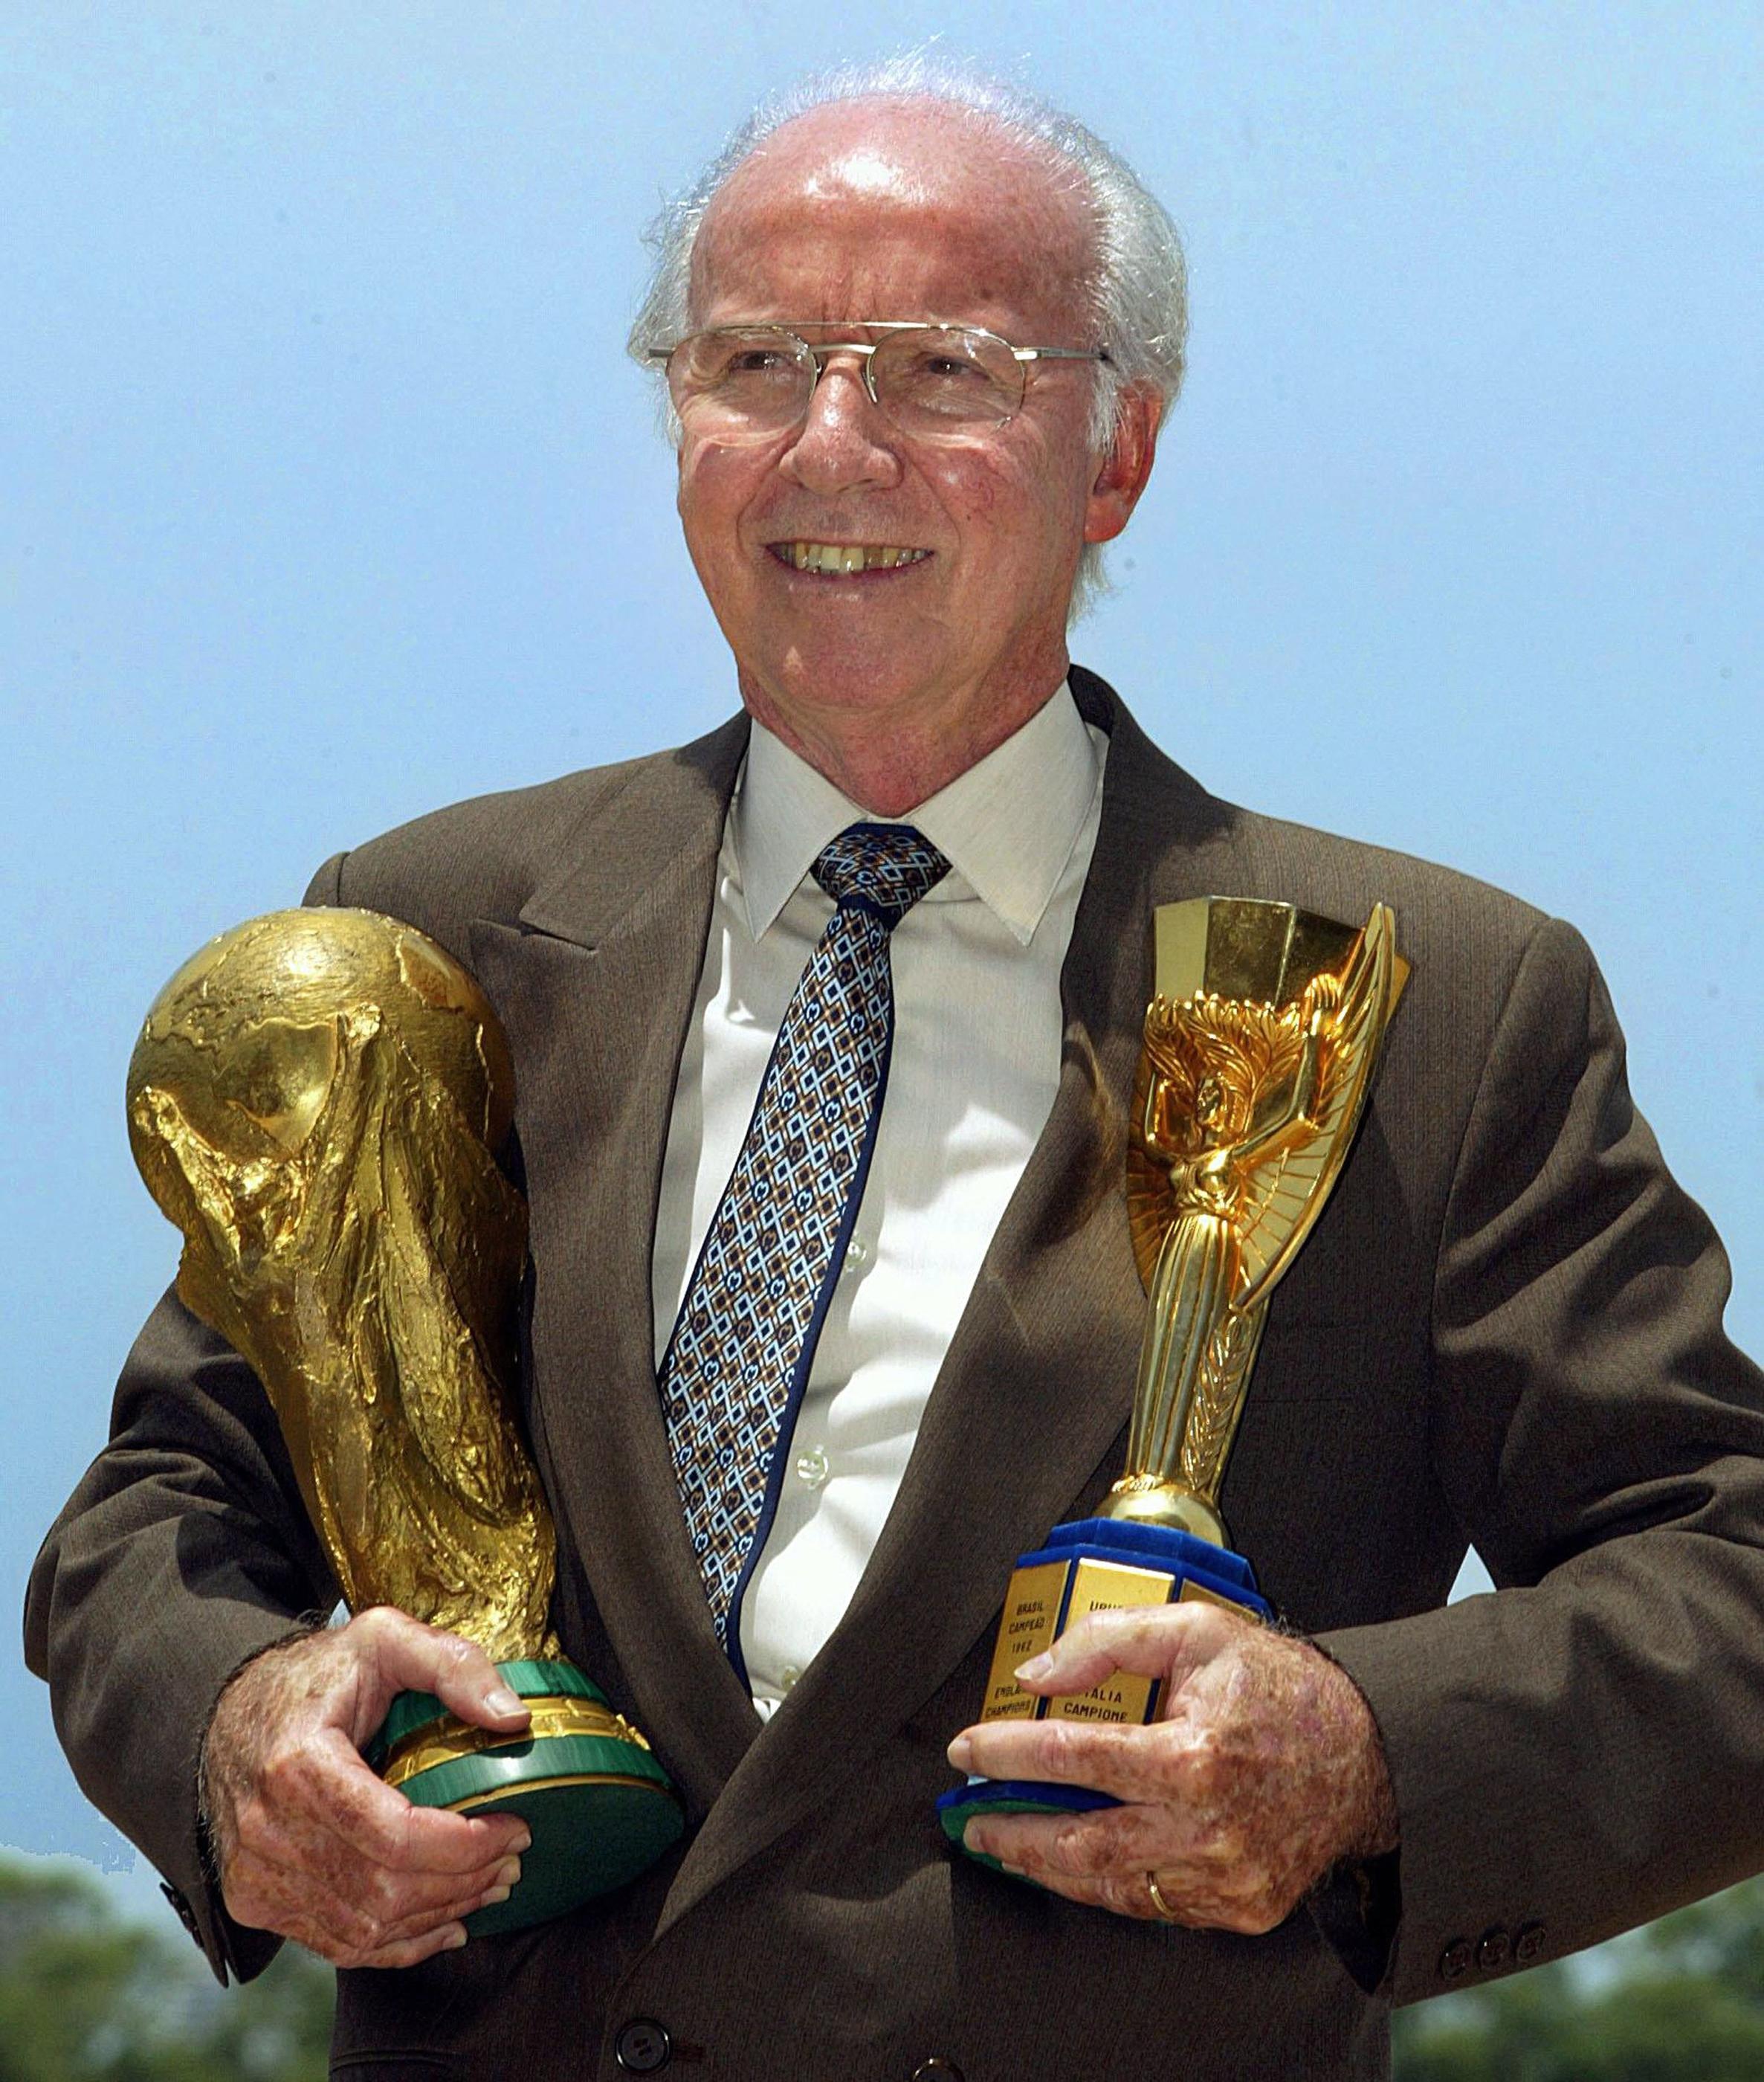 Vainqueur de quatre coupes du monde en tant que joueur et entraîneur, Mario Zagallo (ici en 2003) est décédé vendredi 5 janvier à l'âge de 92 ans. AFP/ANTONIO SCORZA